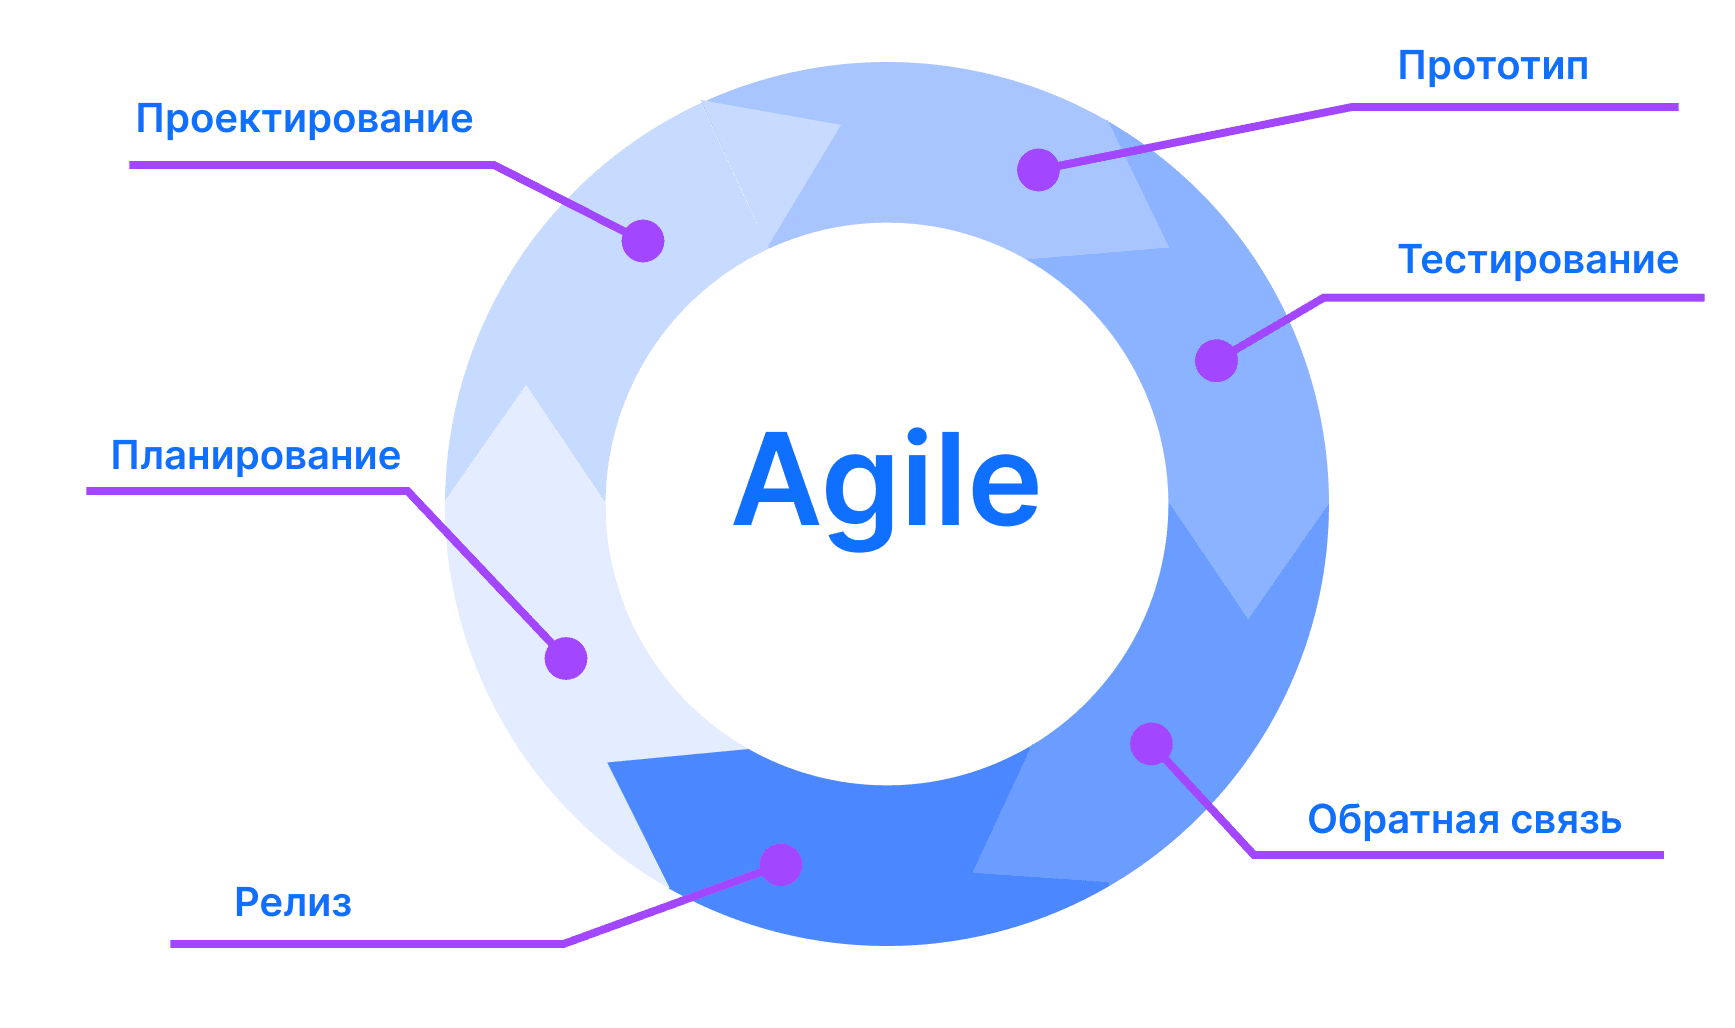 В Agile процесс работы над проектом делят на итерации, каждая из которых длится от 1 до 3 недель